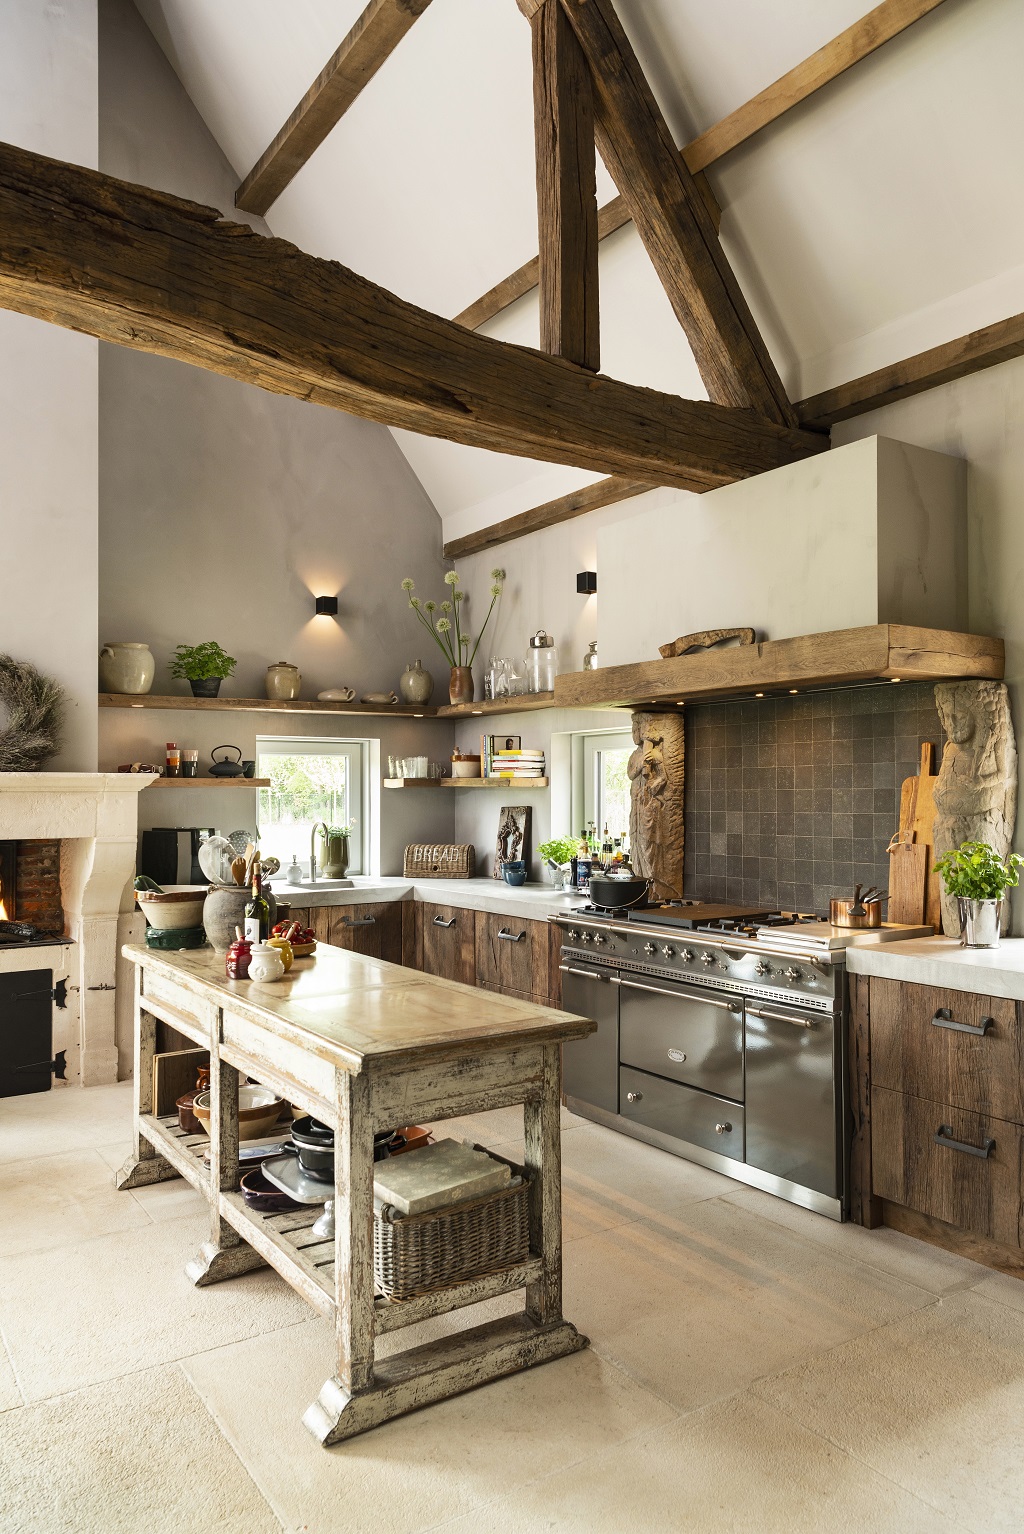 Foto : Keuken van massief oud eikenhout